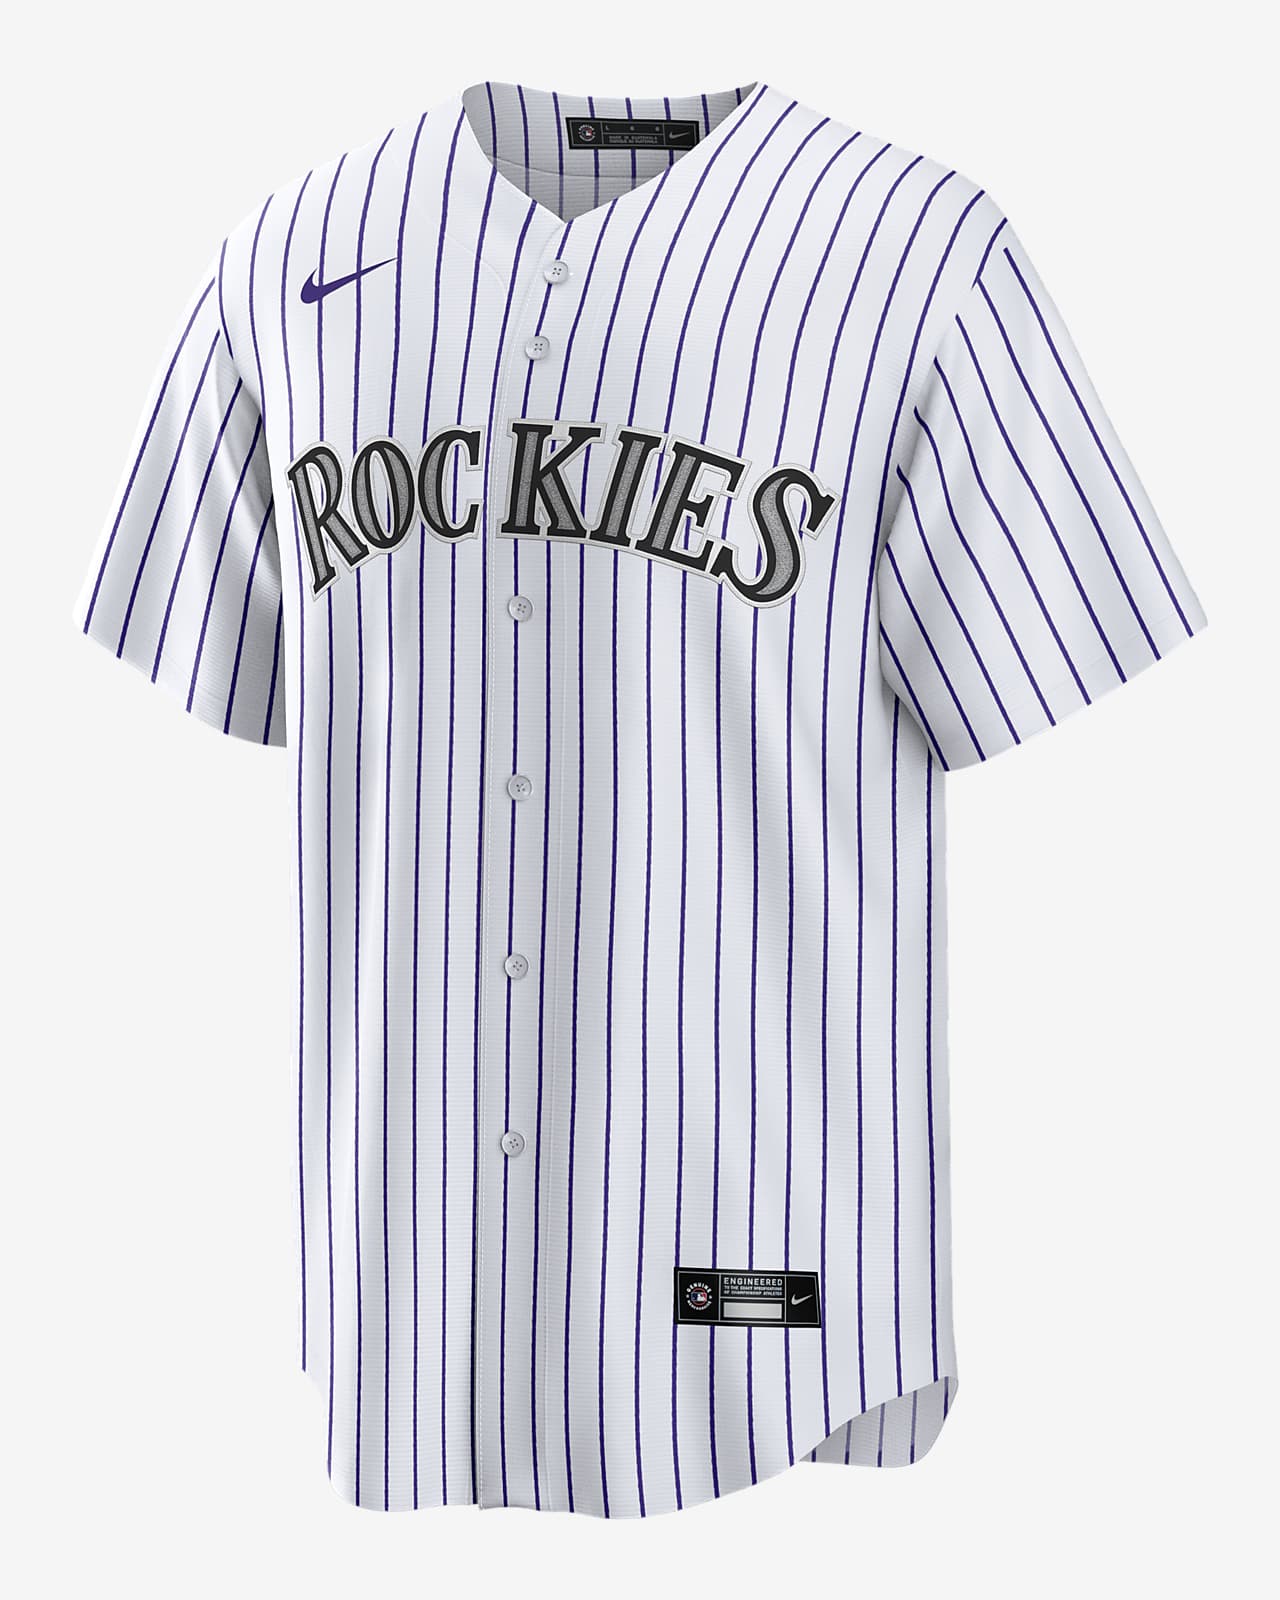 rockies baseball jersey